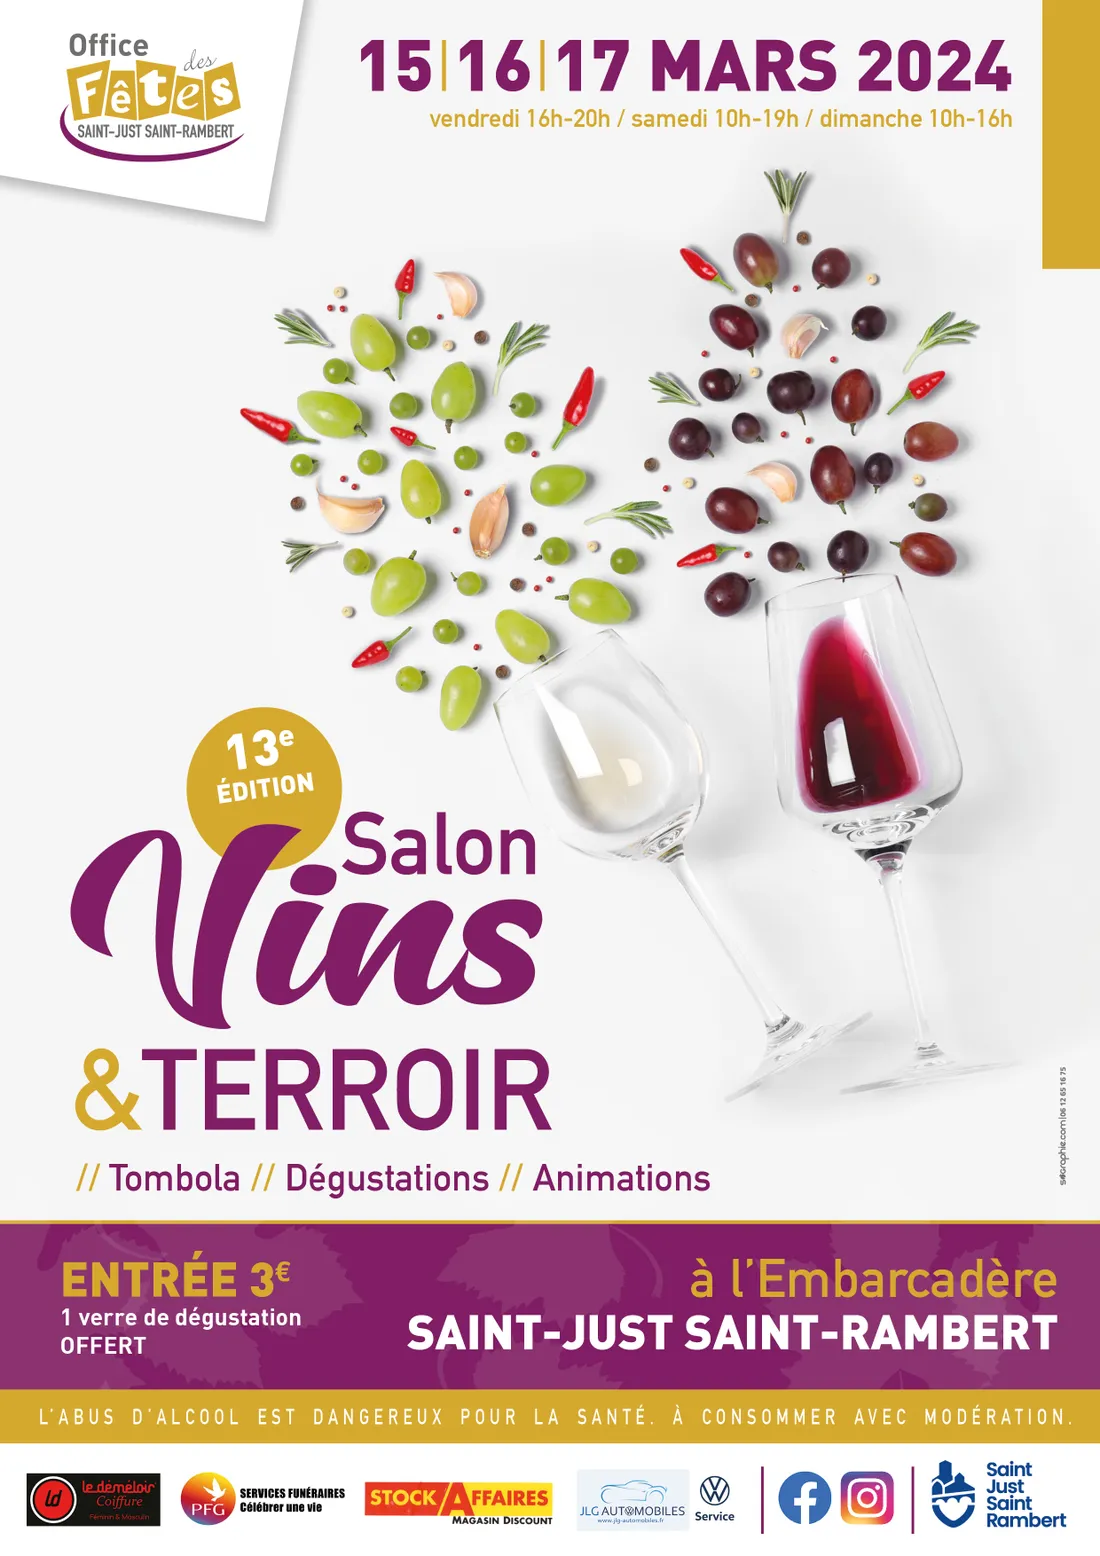 13ème édition du Salon Vins et Terroir à St-Just-St-Rambert